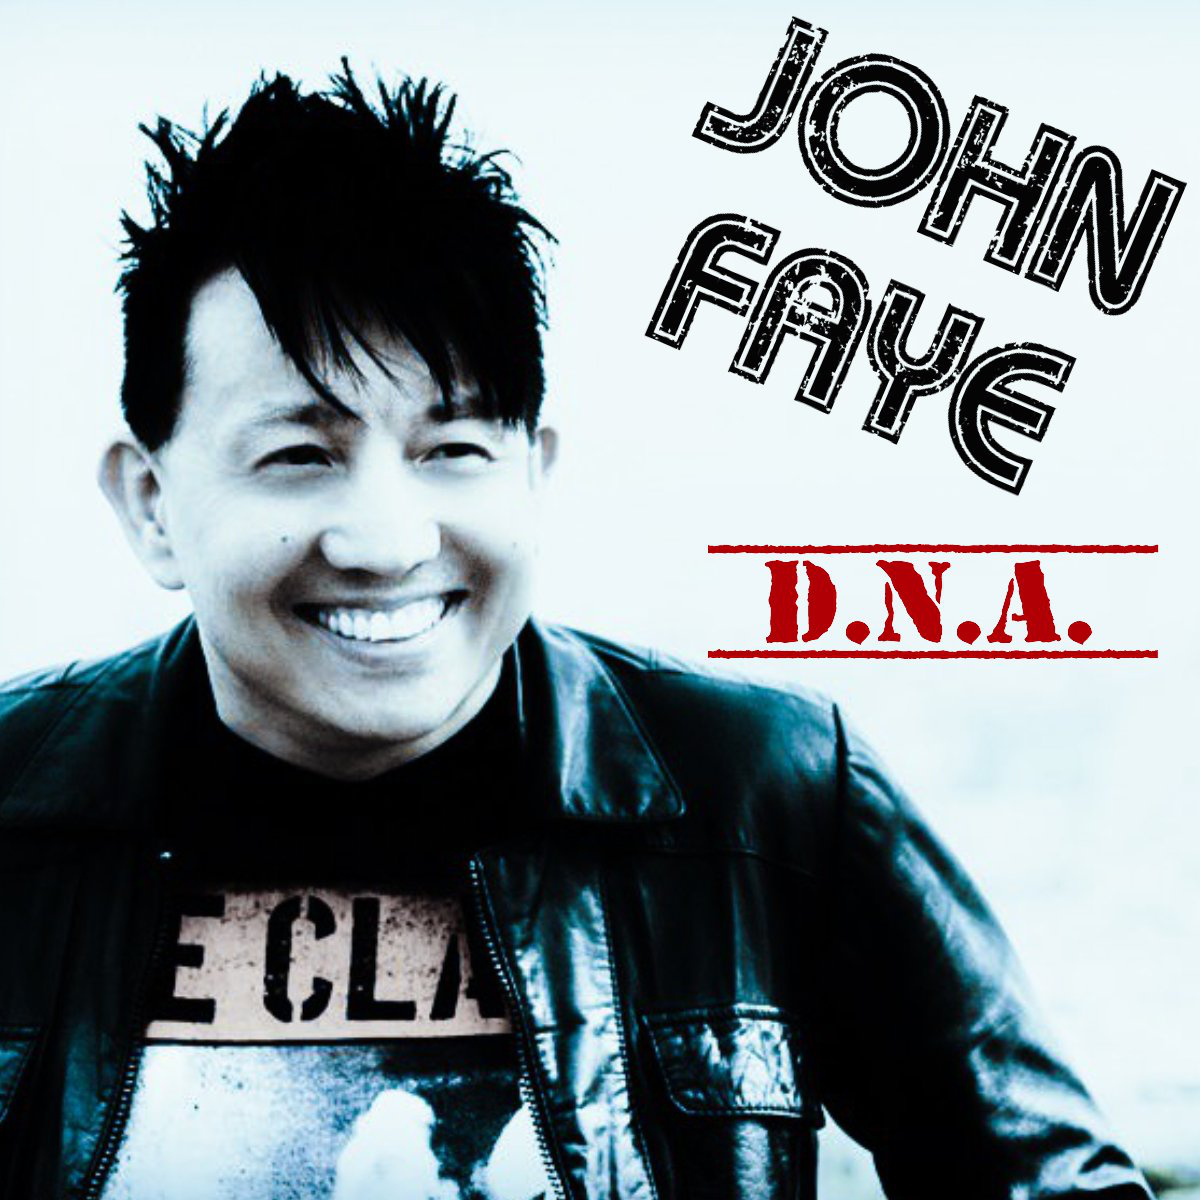 John Faye “D.N.A.”